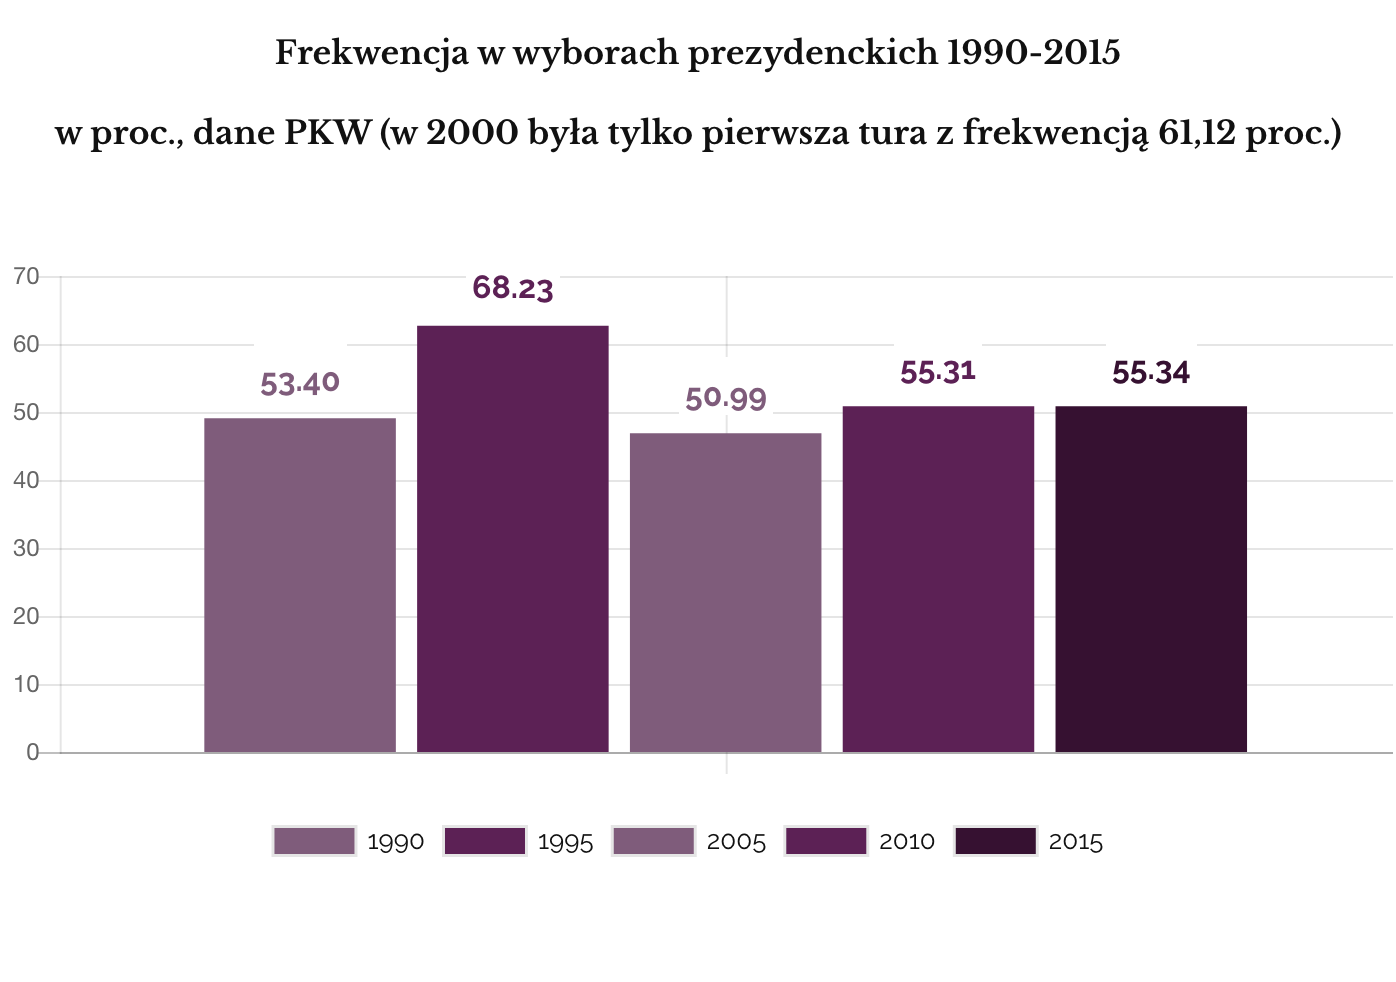 Frekwencja w drugiej turze wyborów prezydenckich 1990-2015